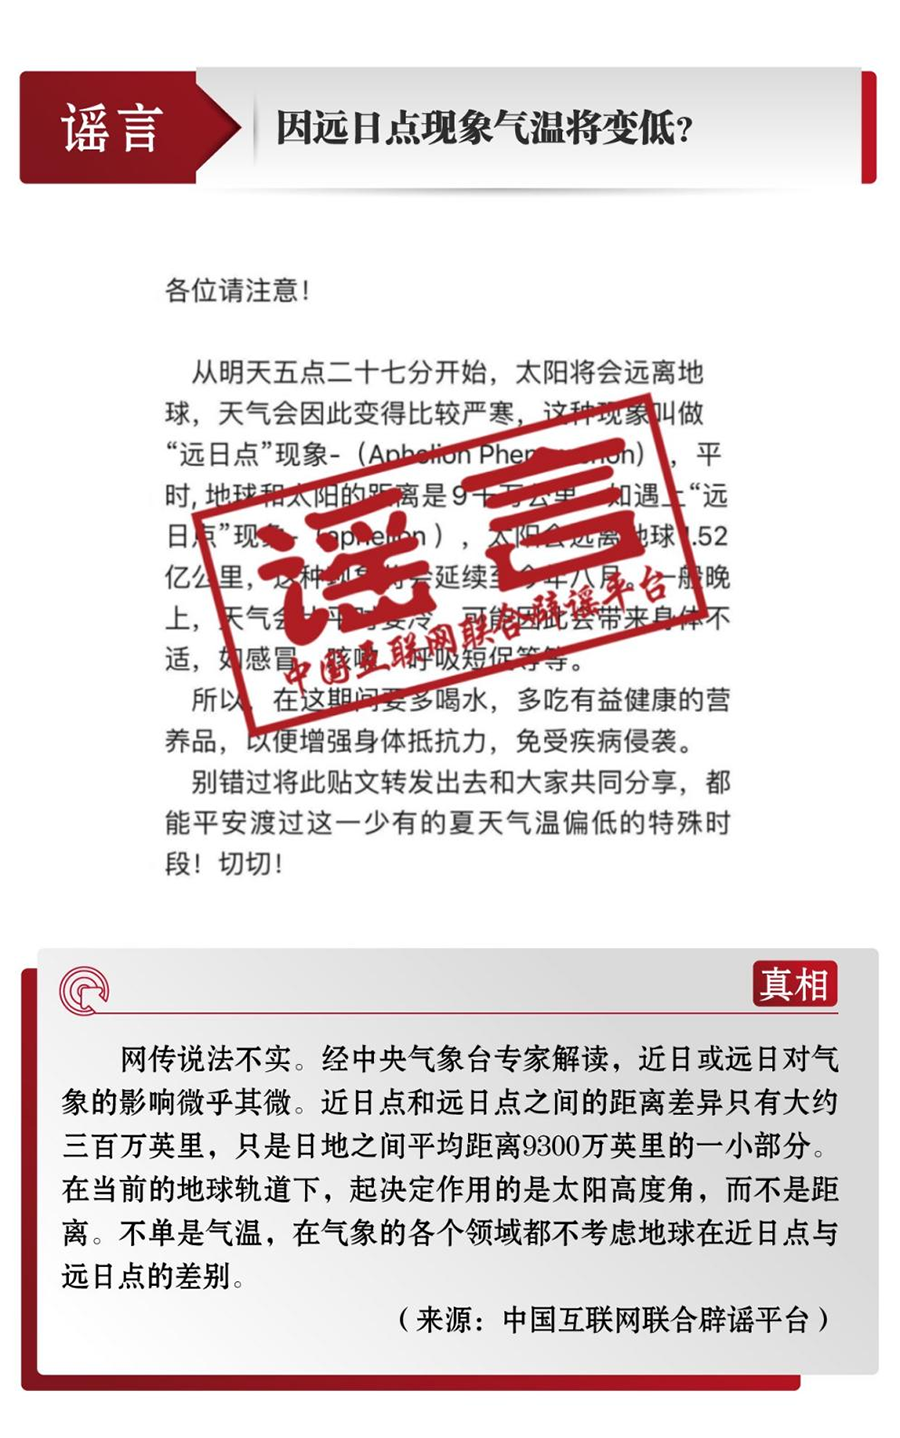 中国互联网联合辟谣平台发布6月辟谣榜